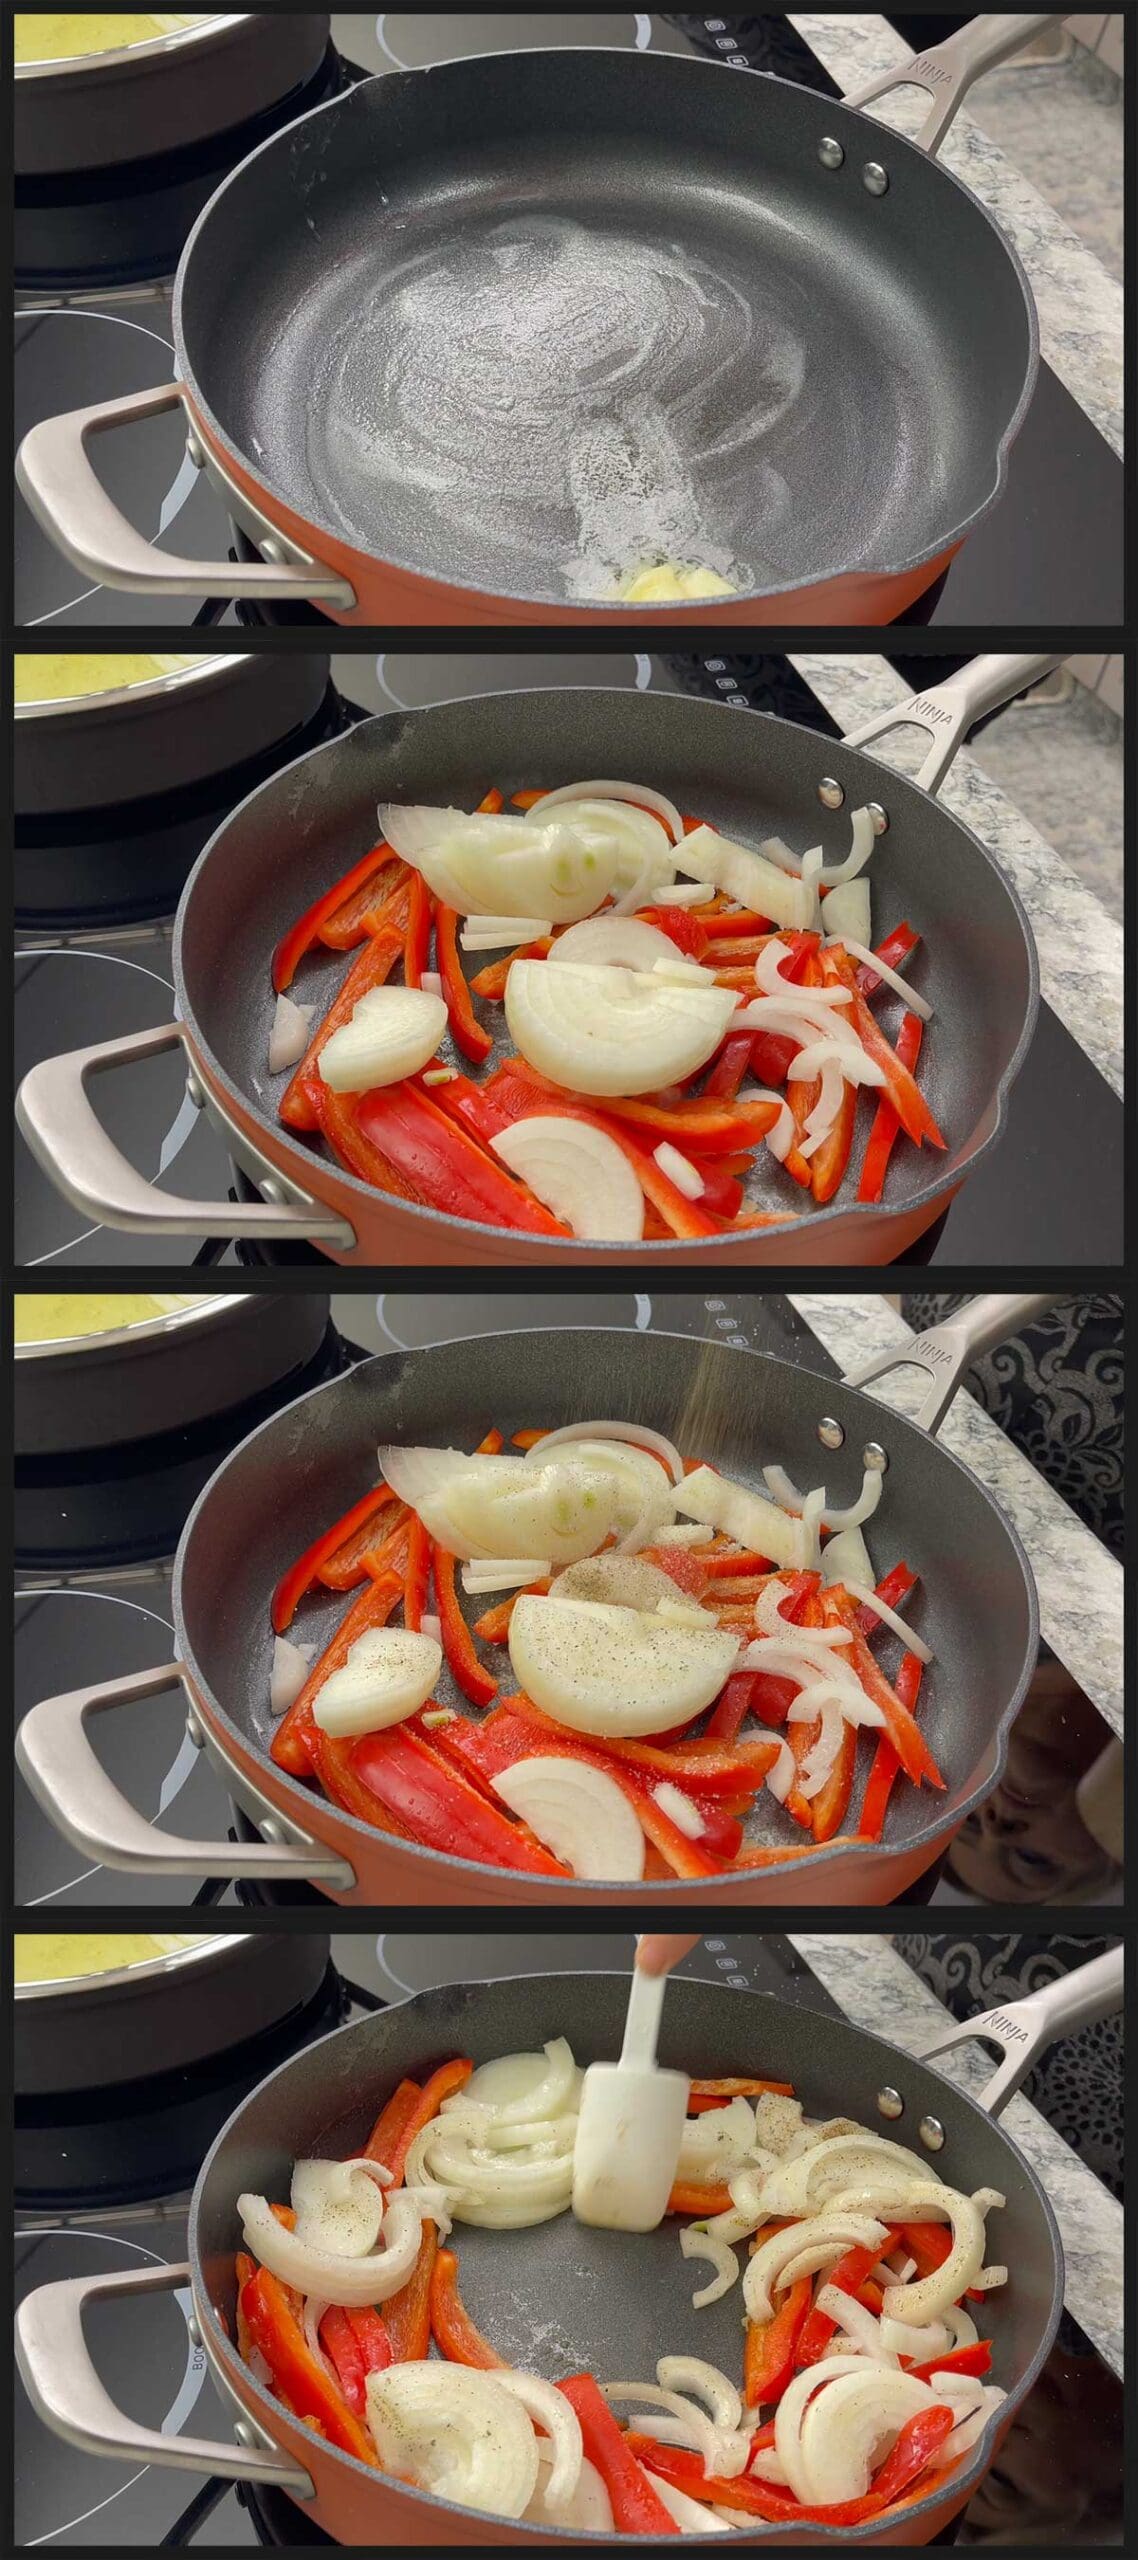 sauteing vegetables for breakfast stromboli.